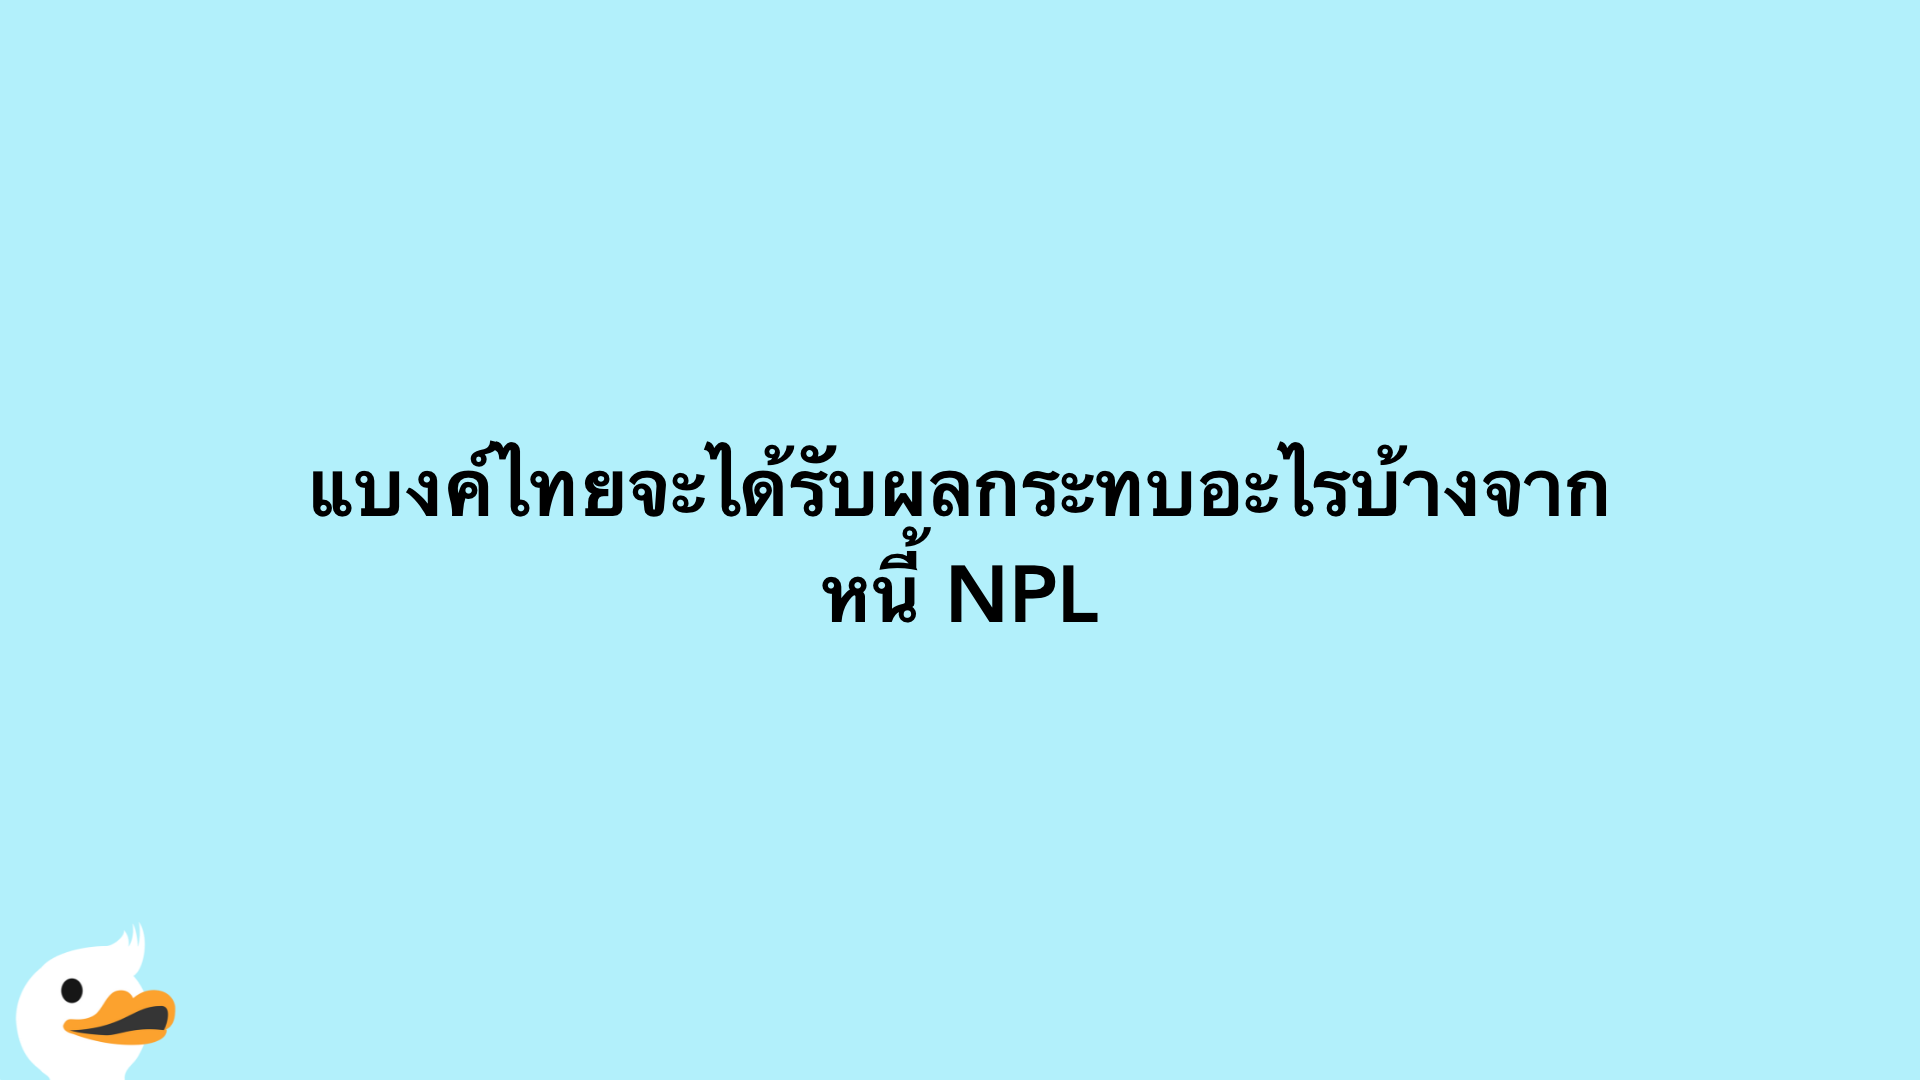 แบงค์ไทยจะได้รับผลกระทบอะไรบ้างจากหนี้ NPL